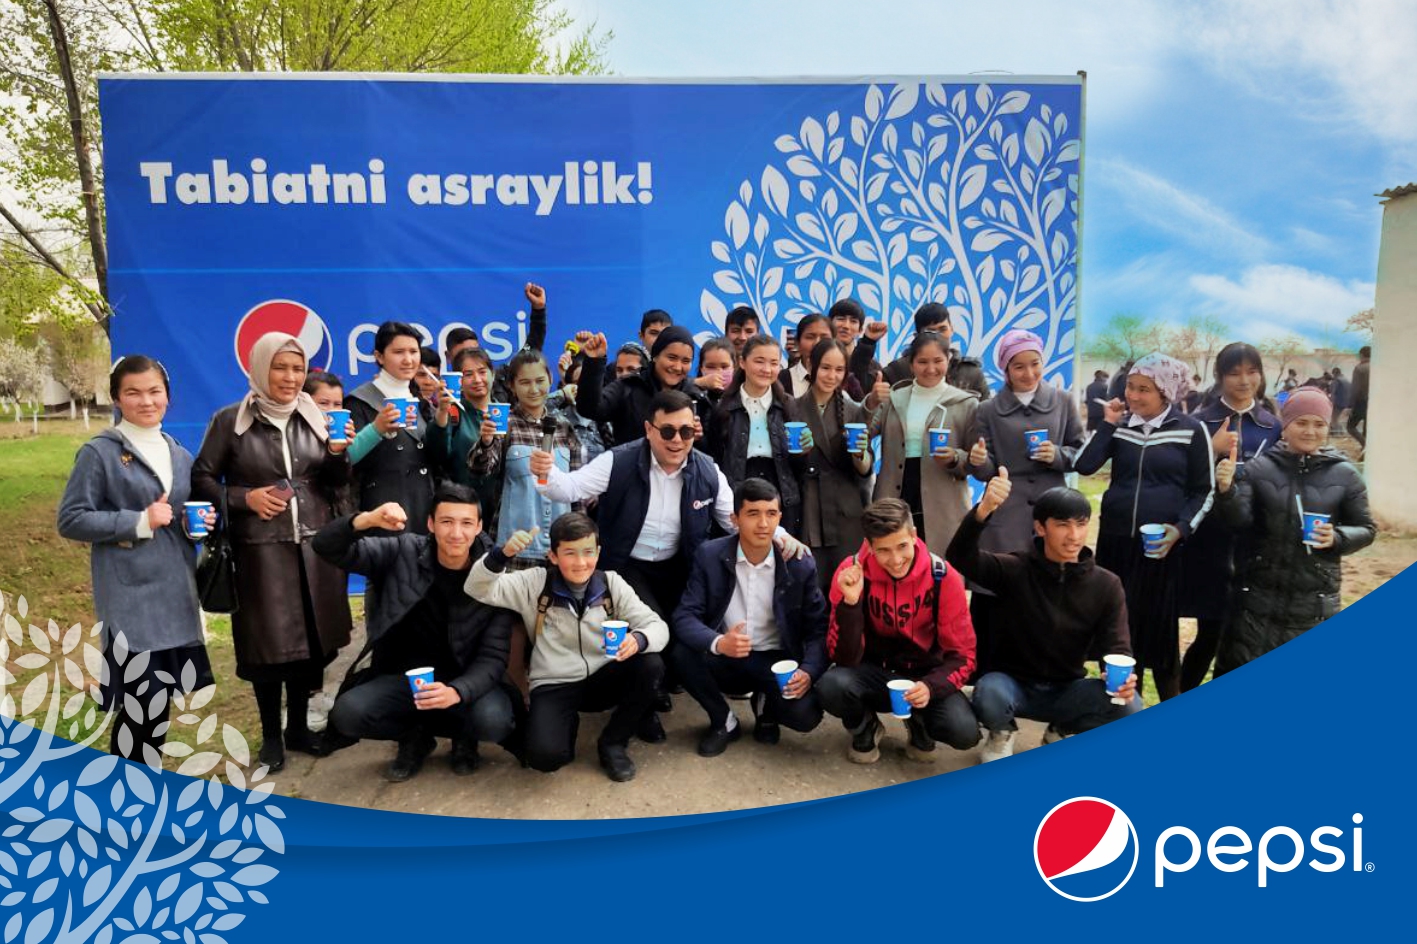 «Яшил макон»: боттлер PepsiCo в Узбекистане поддерживает «зеленые инициативы»